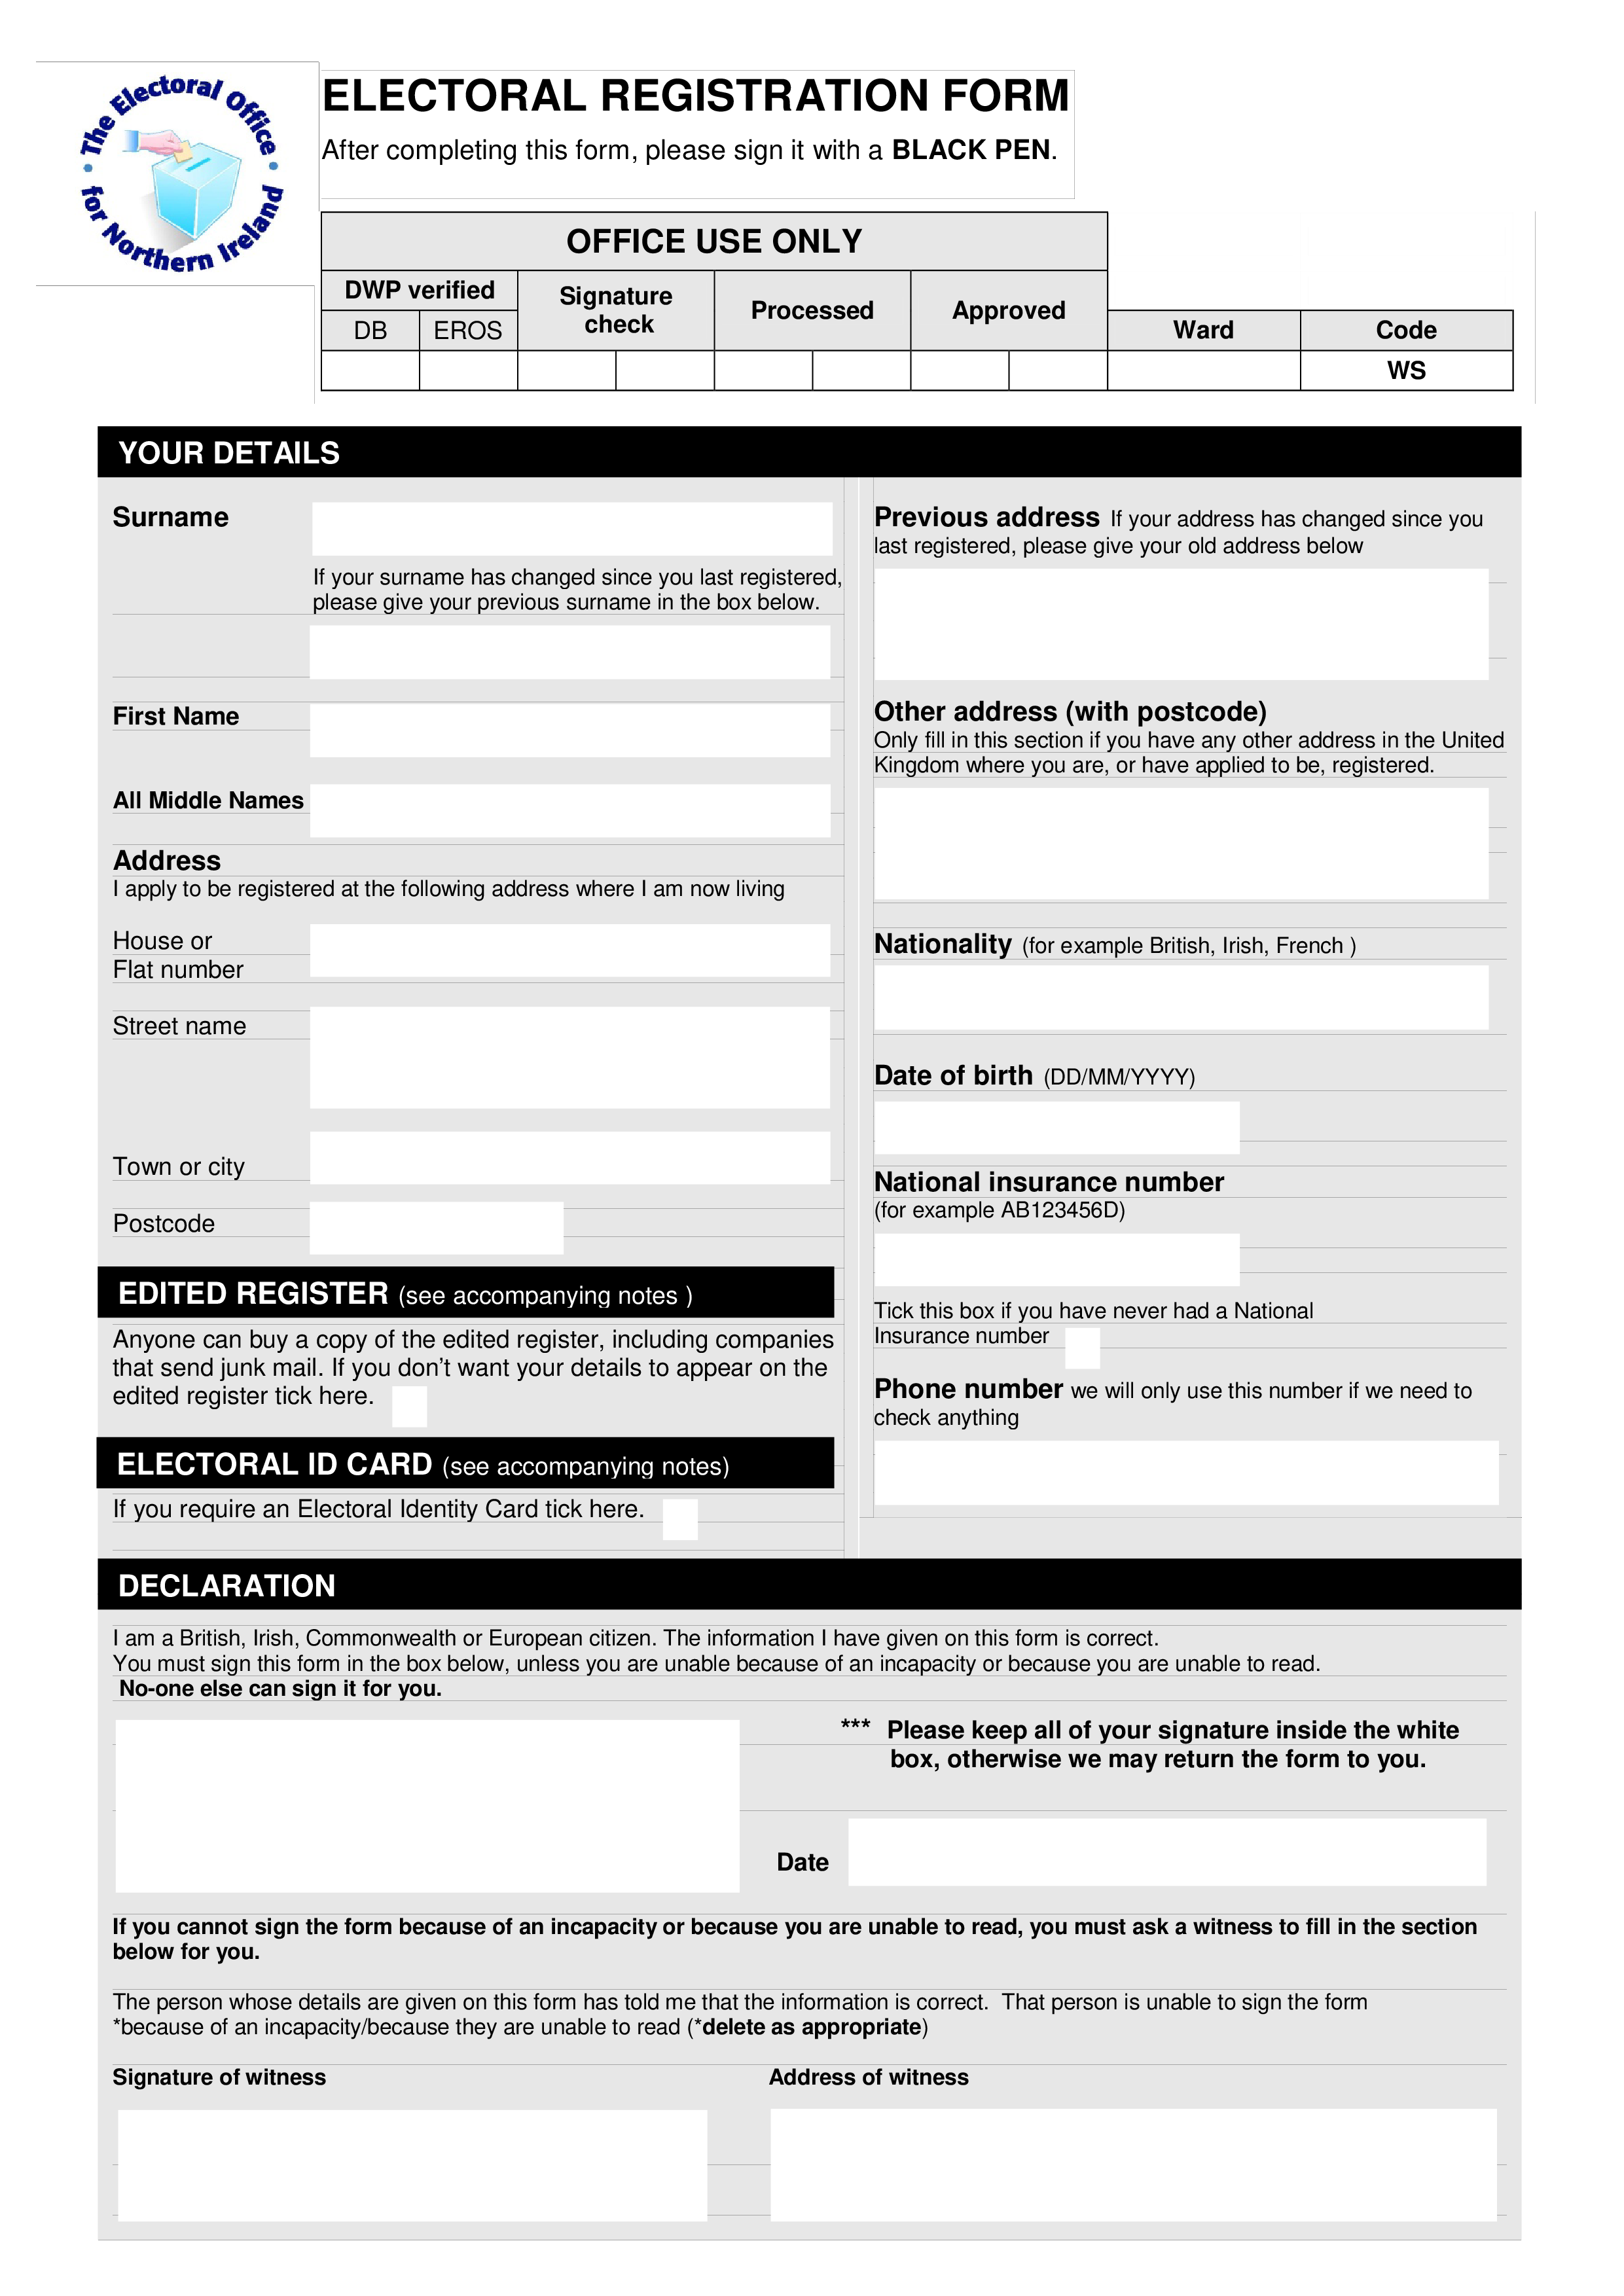 Electoral Registration Form Printable 模板